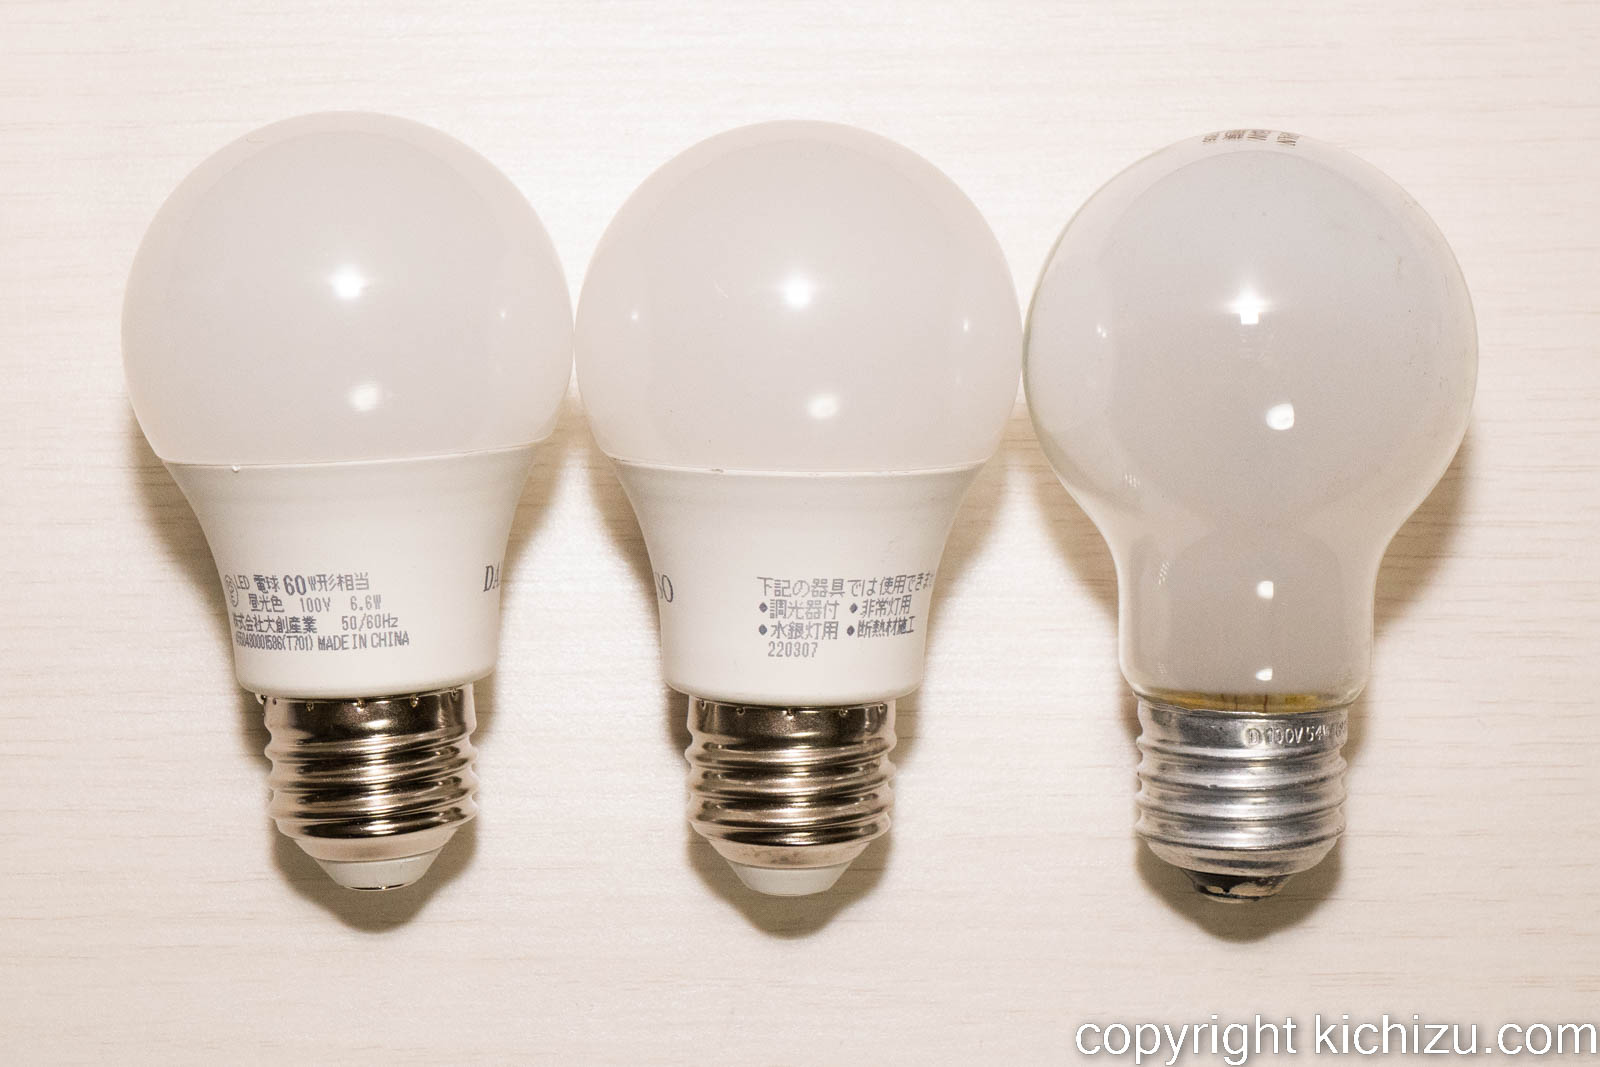 ダイソー60 W LED 電球とシリカ白熱電球との比較